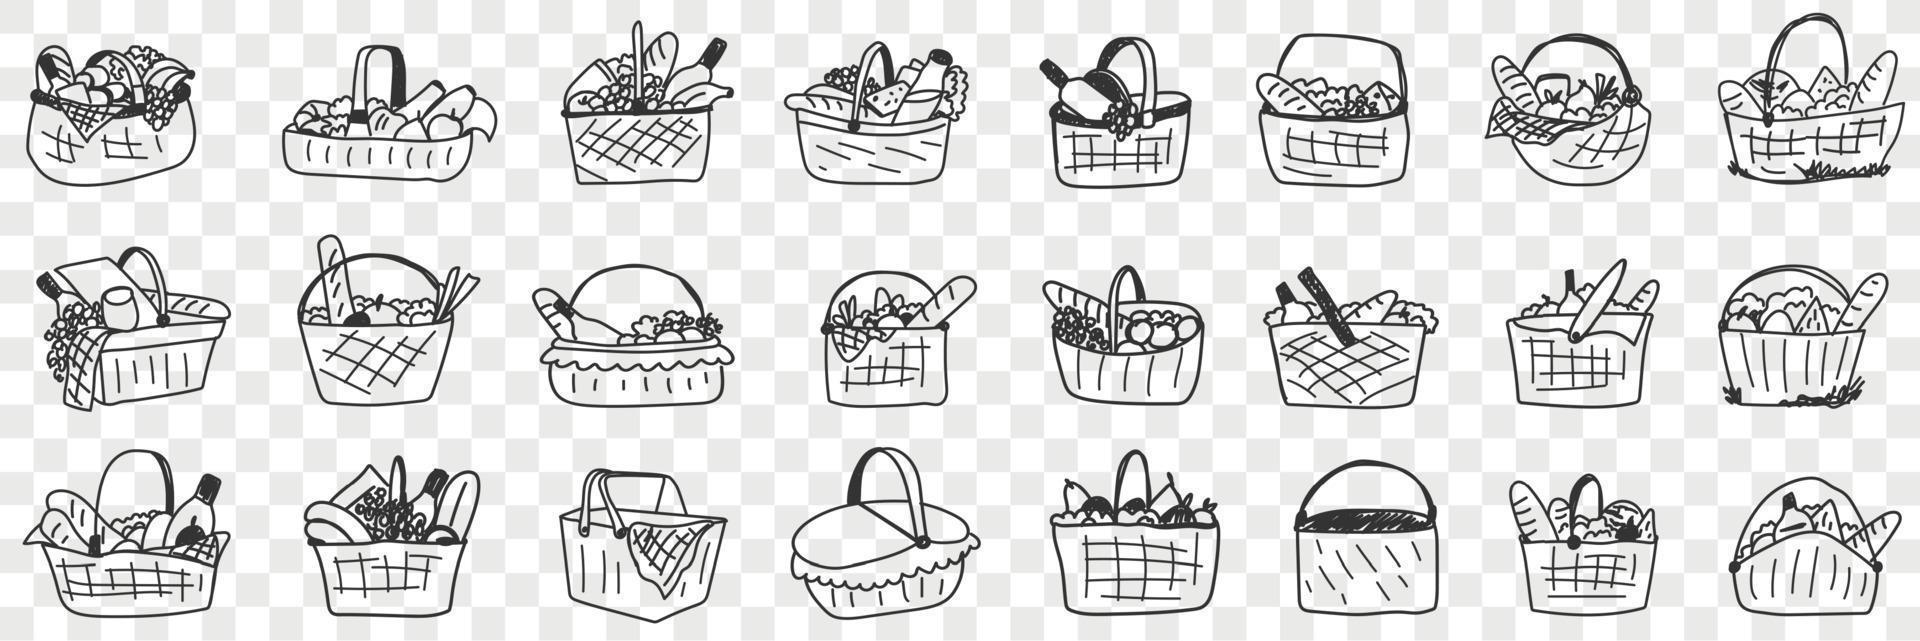 cesta con comida garabatear colocar. colección de mano dibujado varios cestas con ingredientes comida bebidas para picnics al aire libre aislado en transparente antecedentes vector